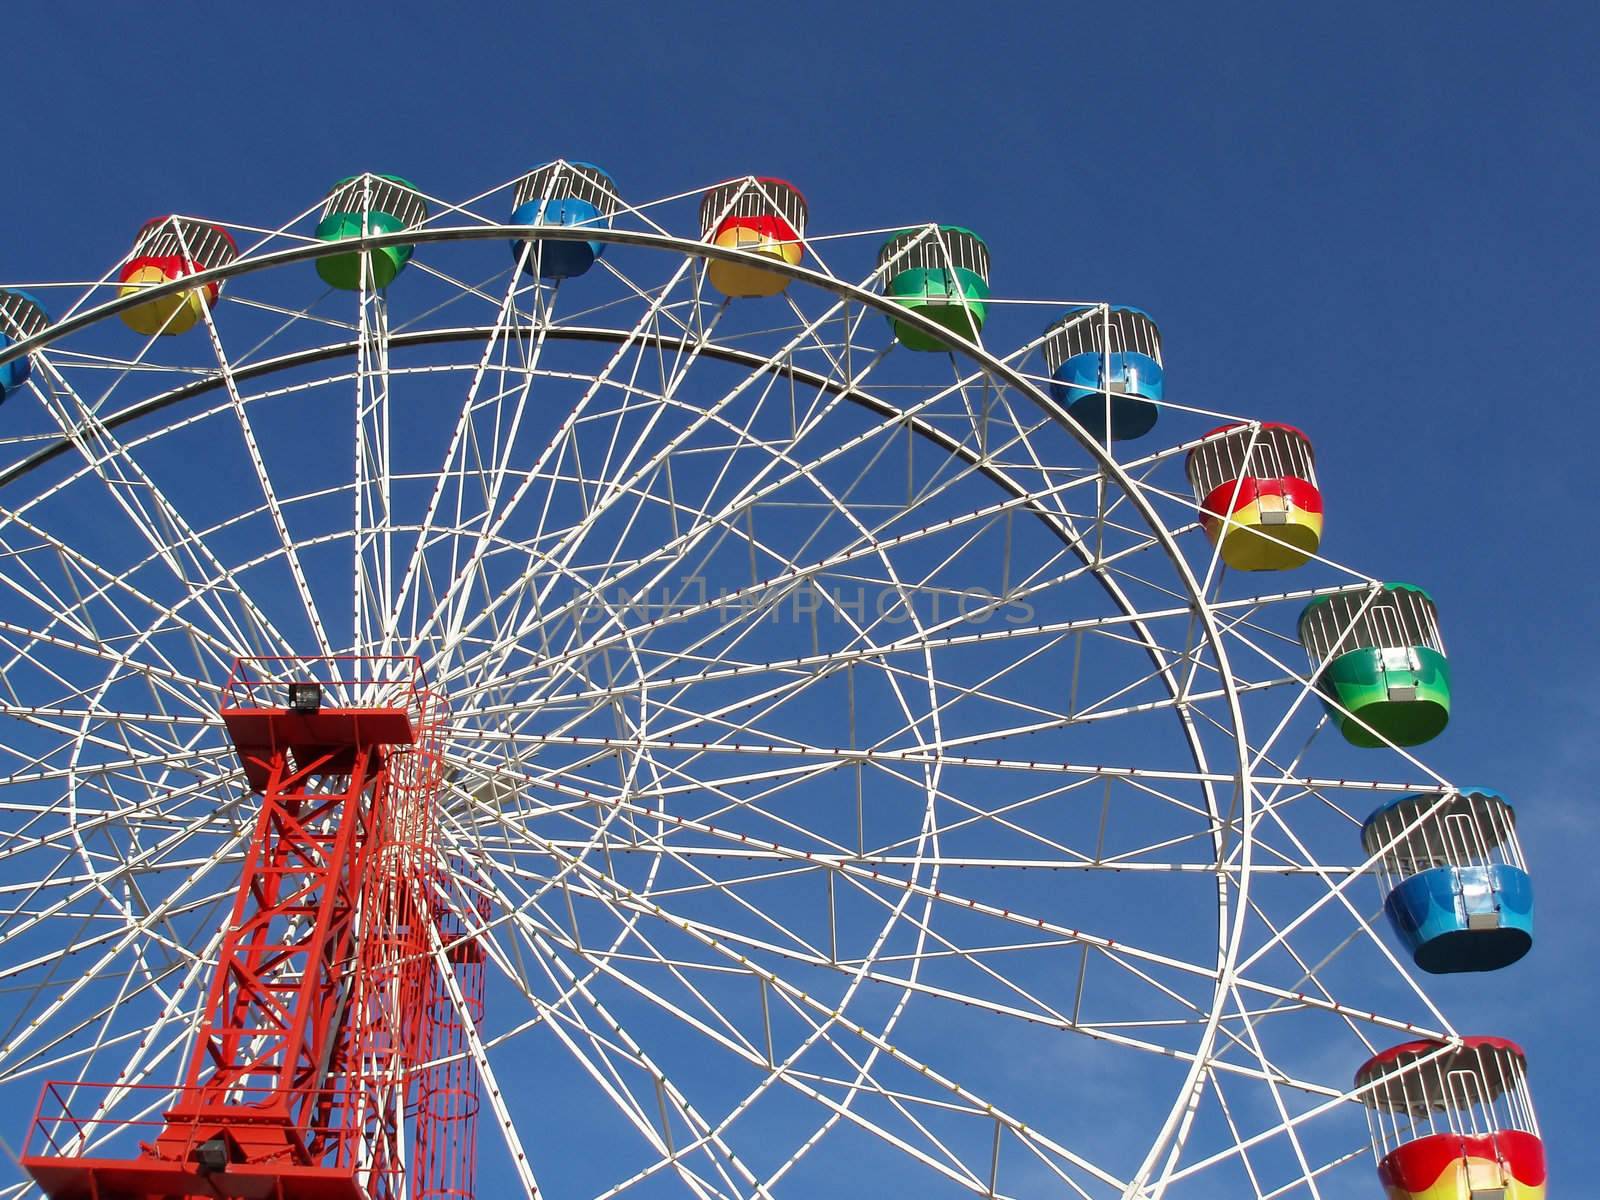 a colourful fairground wheel against a blue sky